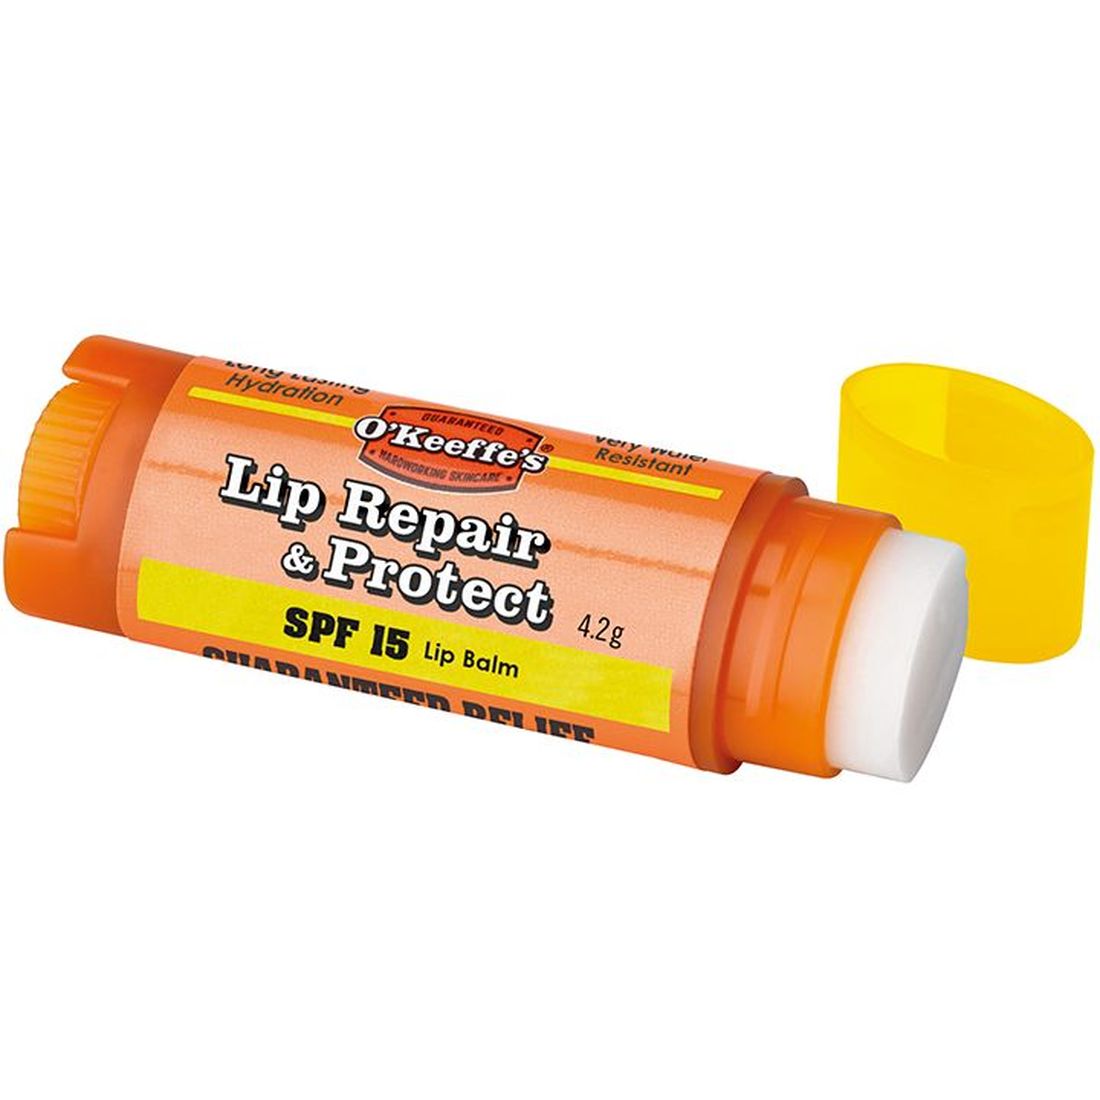 Gorilla Glue O'Keeffe's Lip Repair & Protect Lip Balm SPF15 4.2g                             